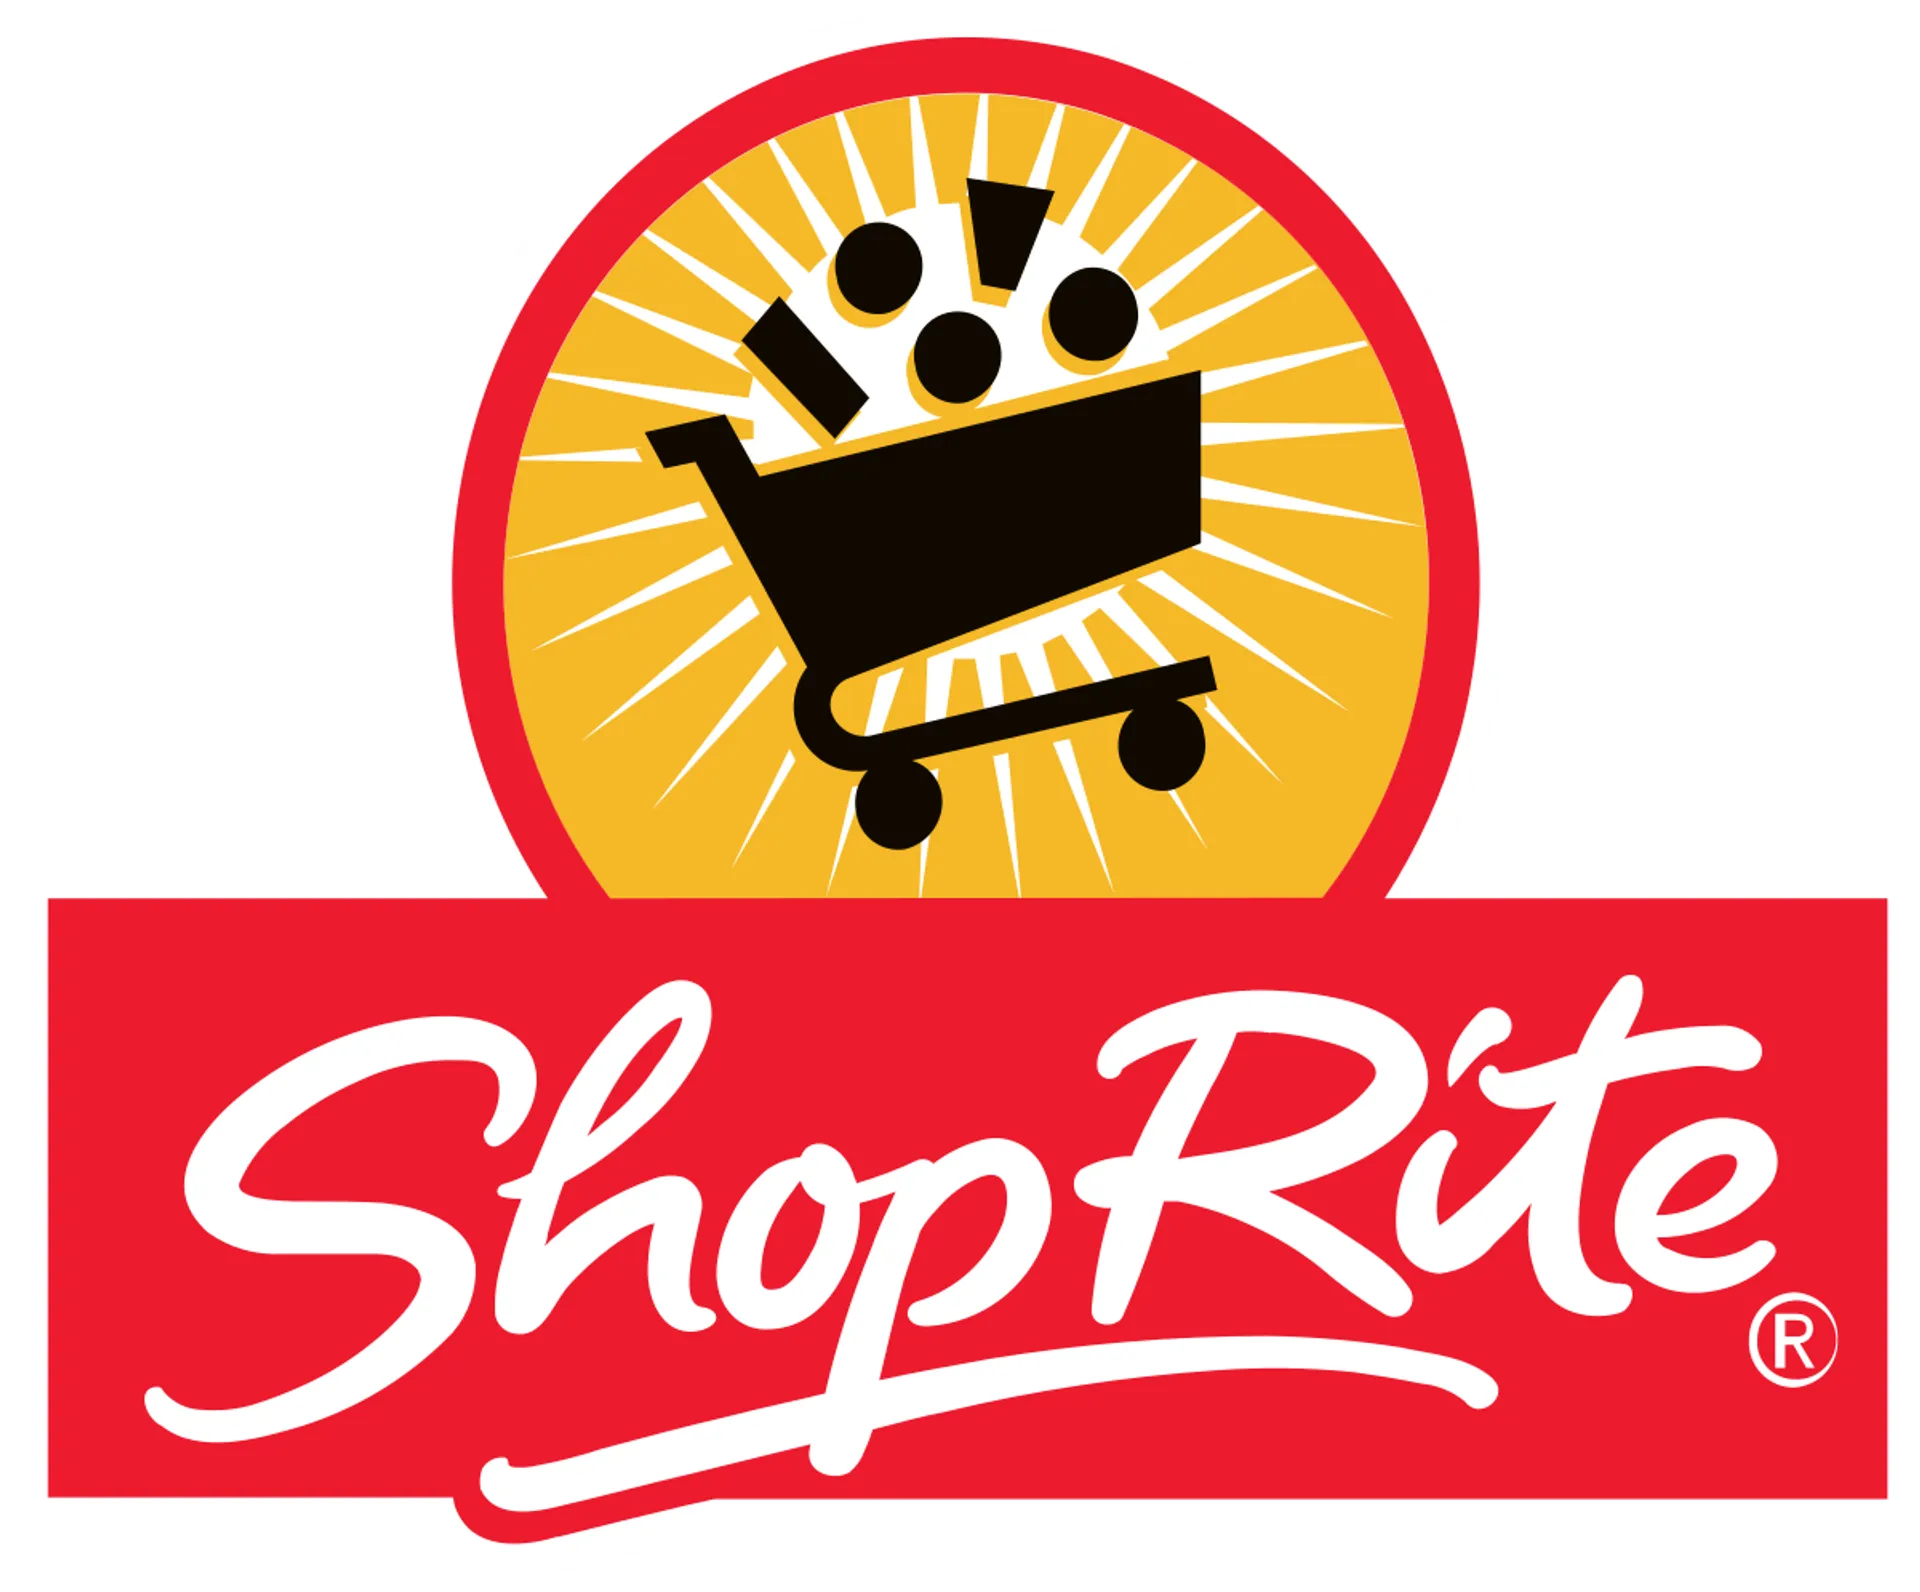 SHOPRITE logo